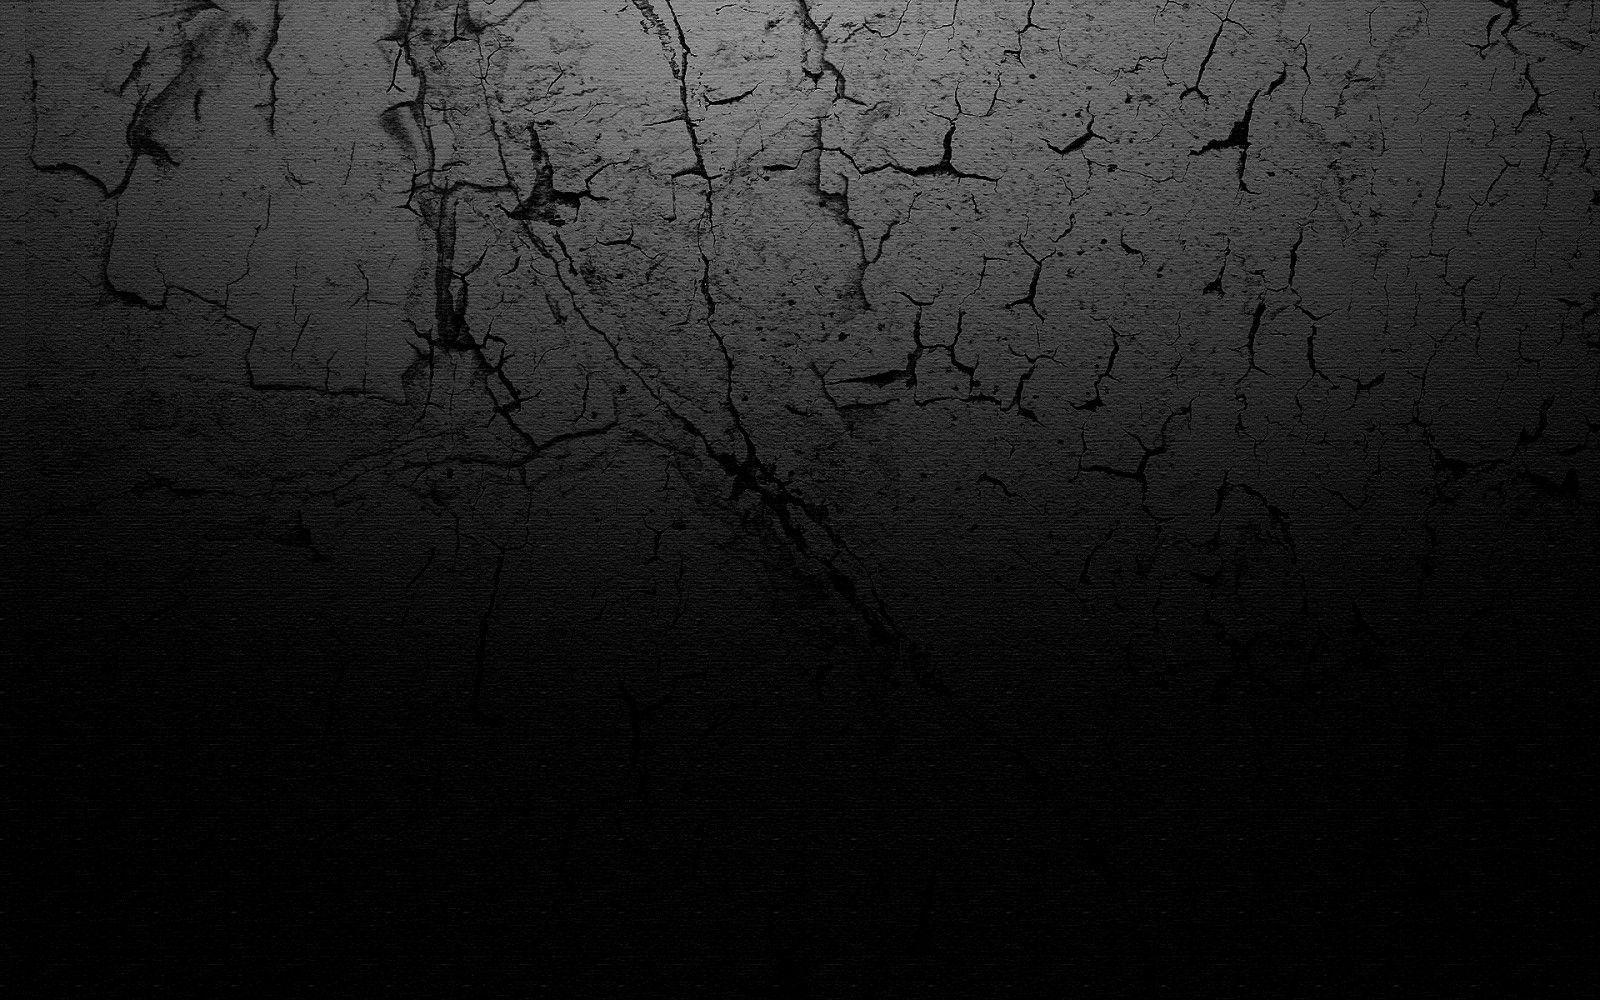 Black Backgrounds Design - Wallpaper Cave